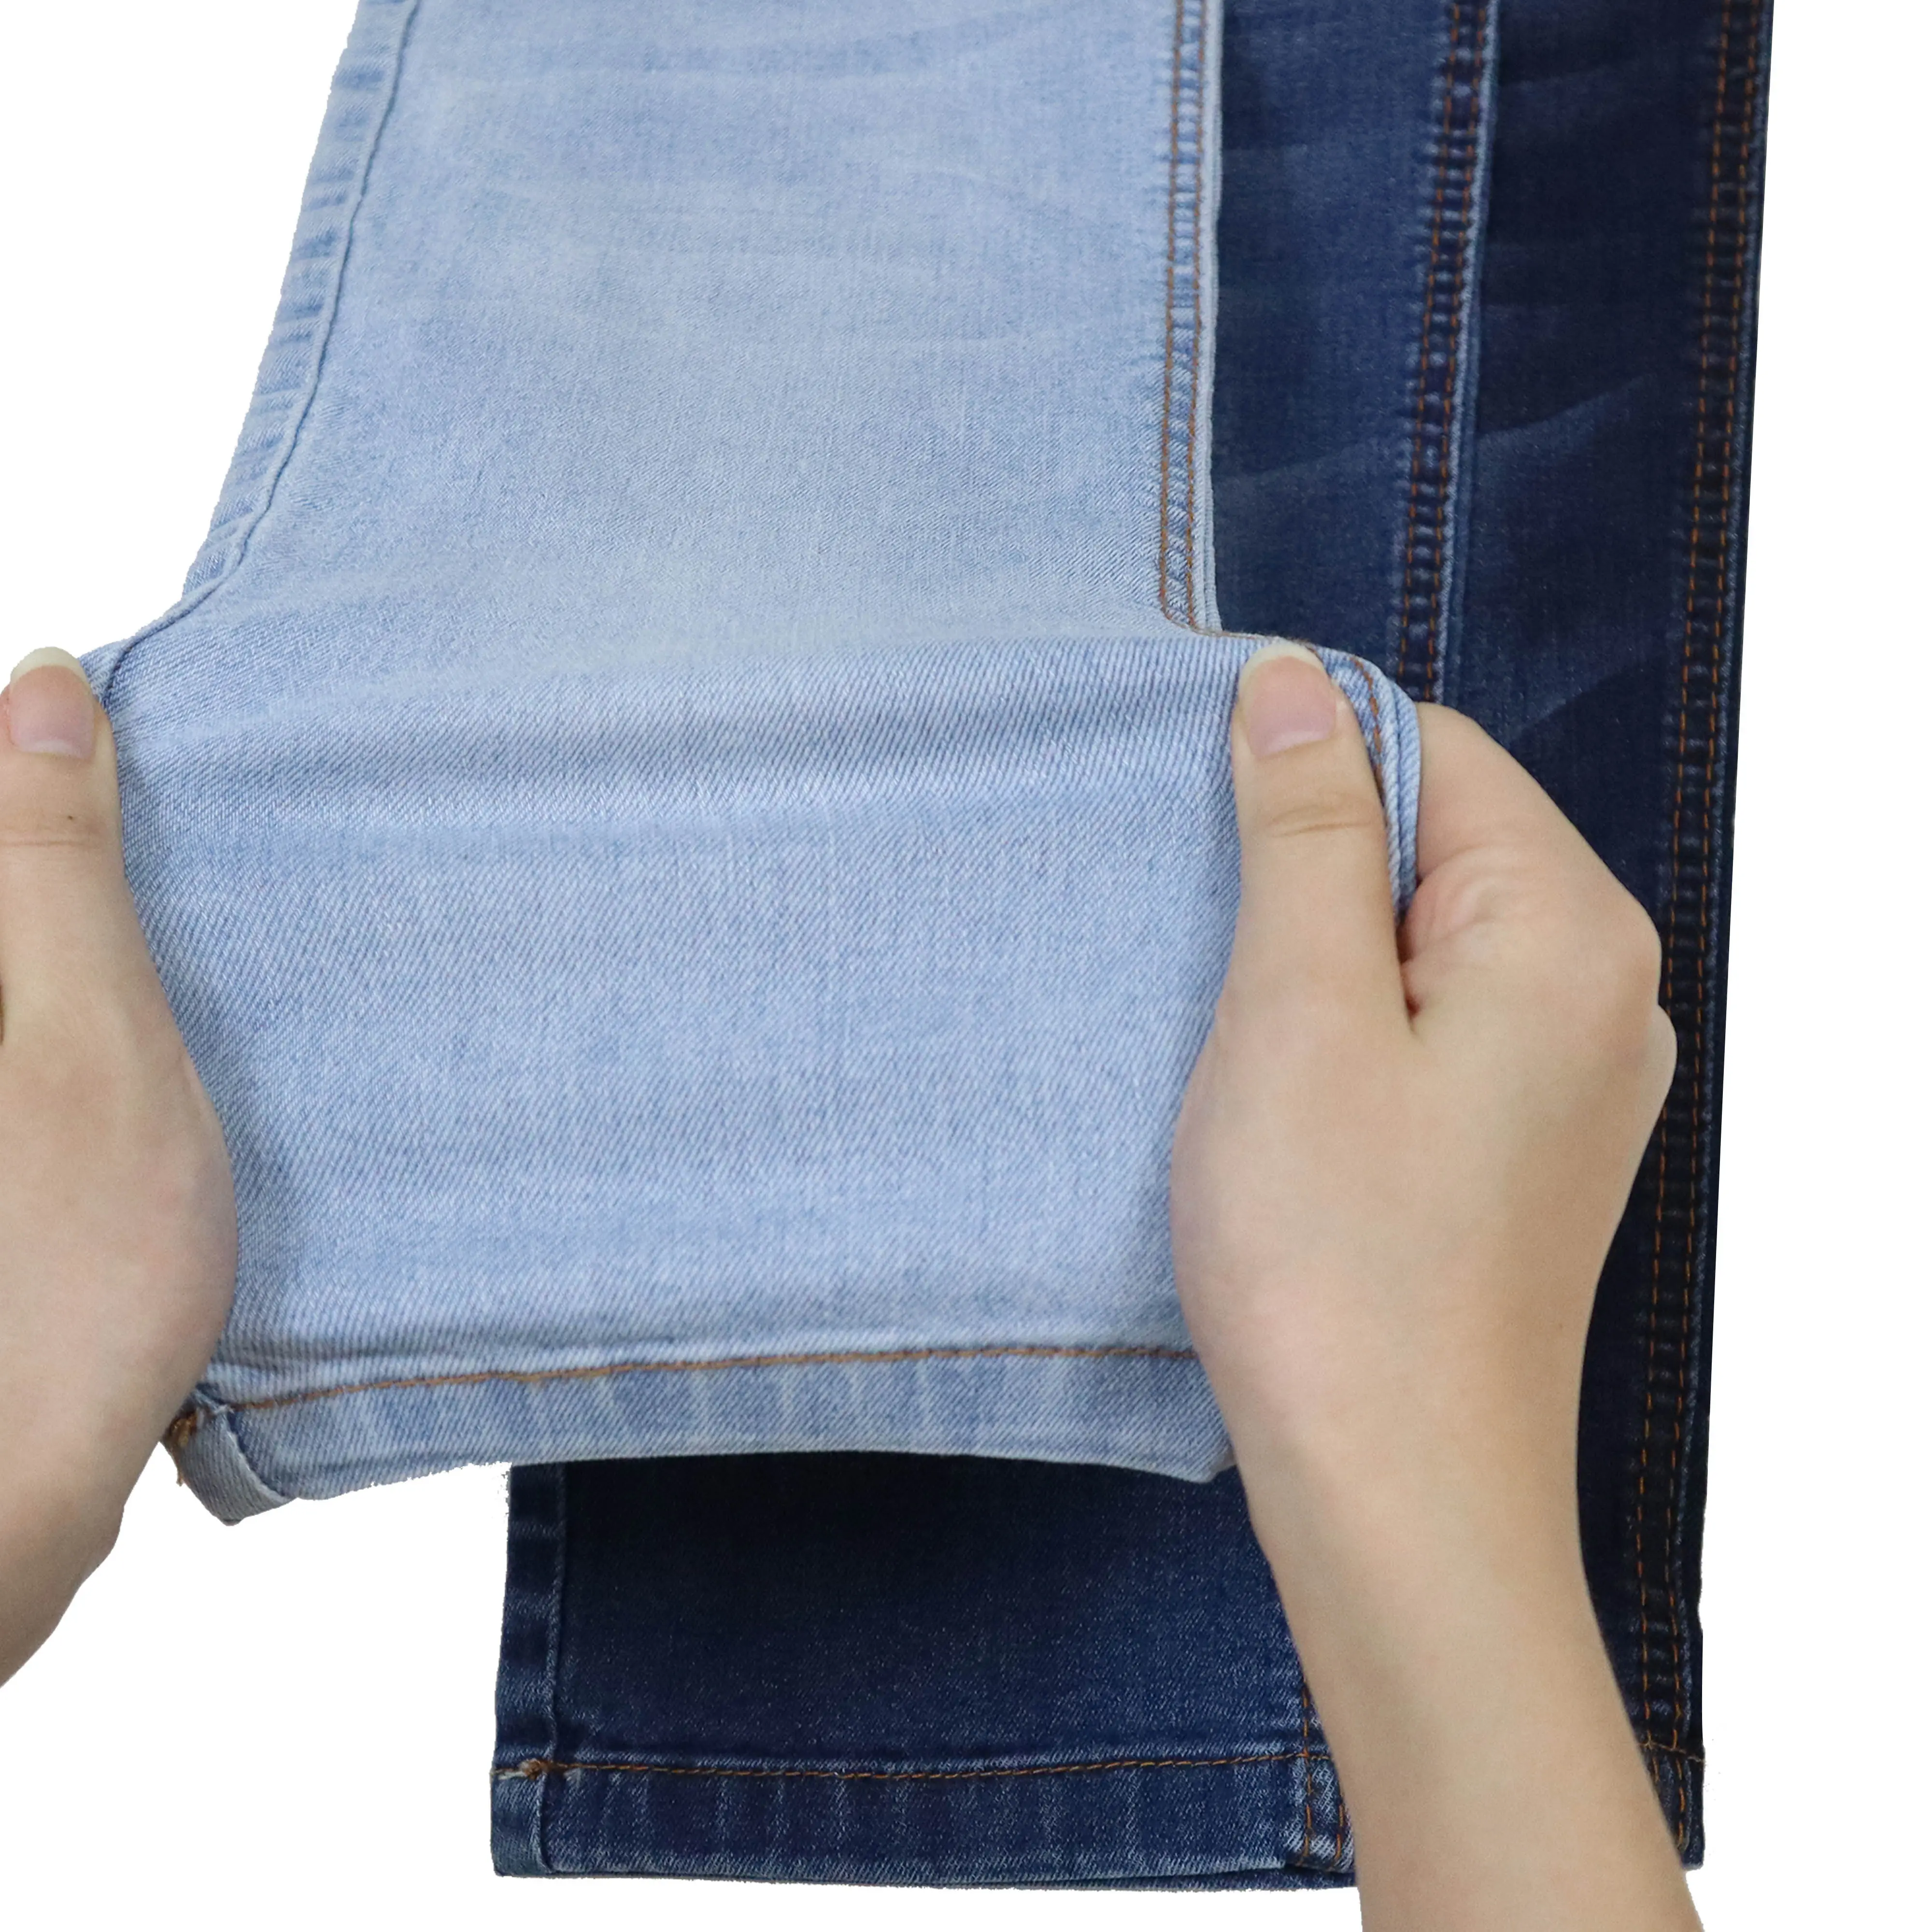 CF-3392AW 72% coton 24% polyester le plus populaire tissu Denim brodé petite fleur Denim Jeans tissu matériel